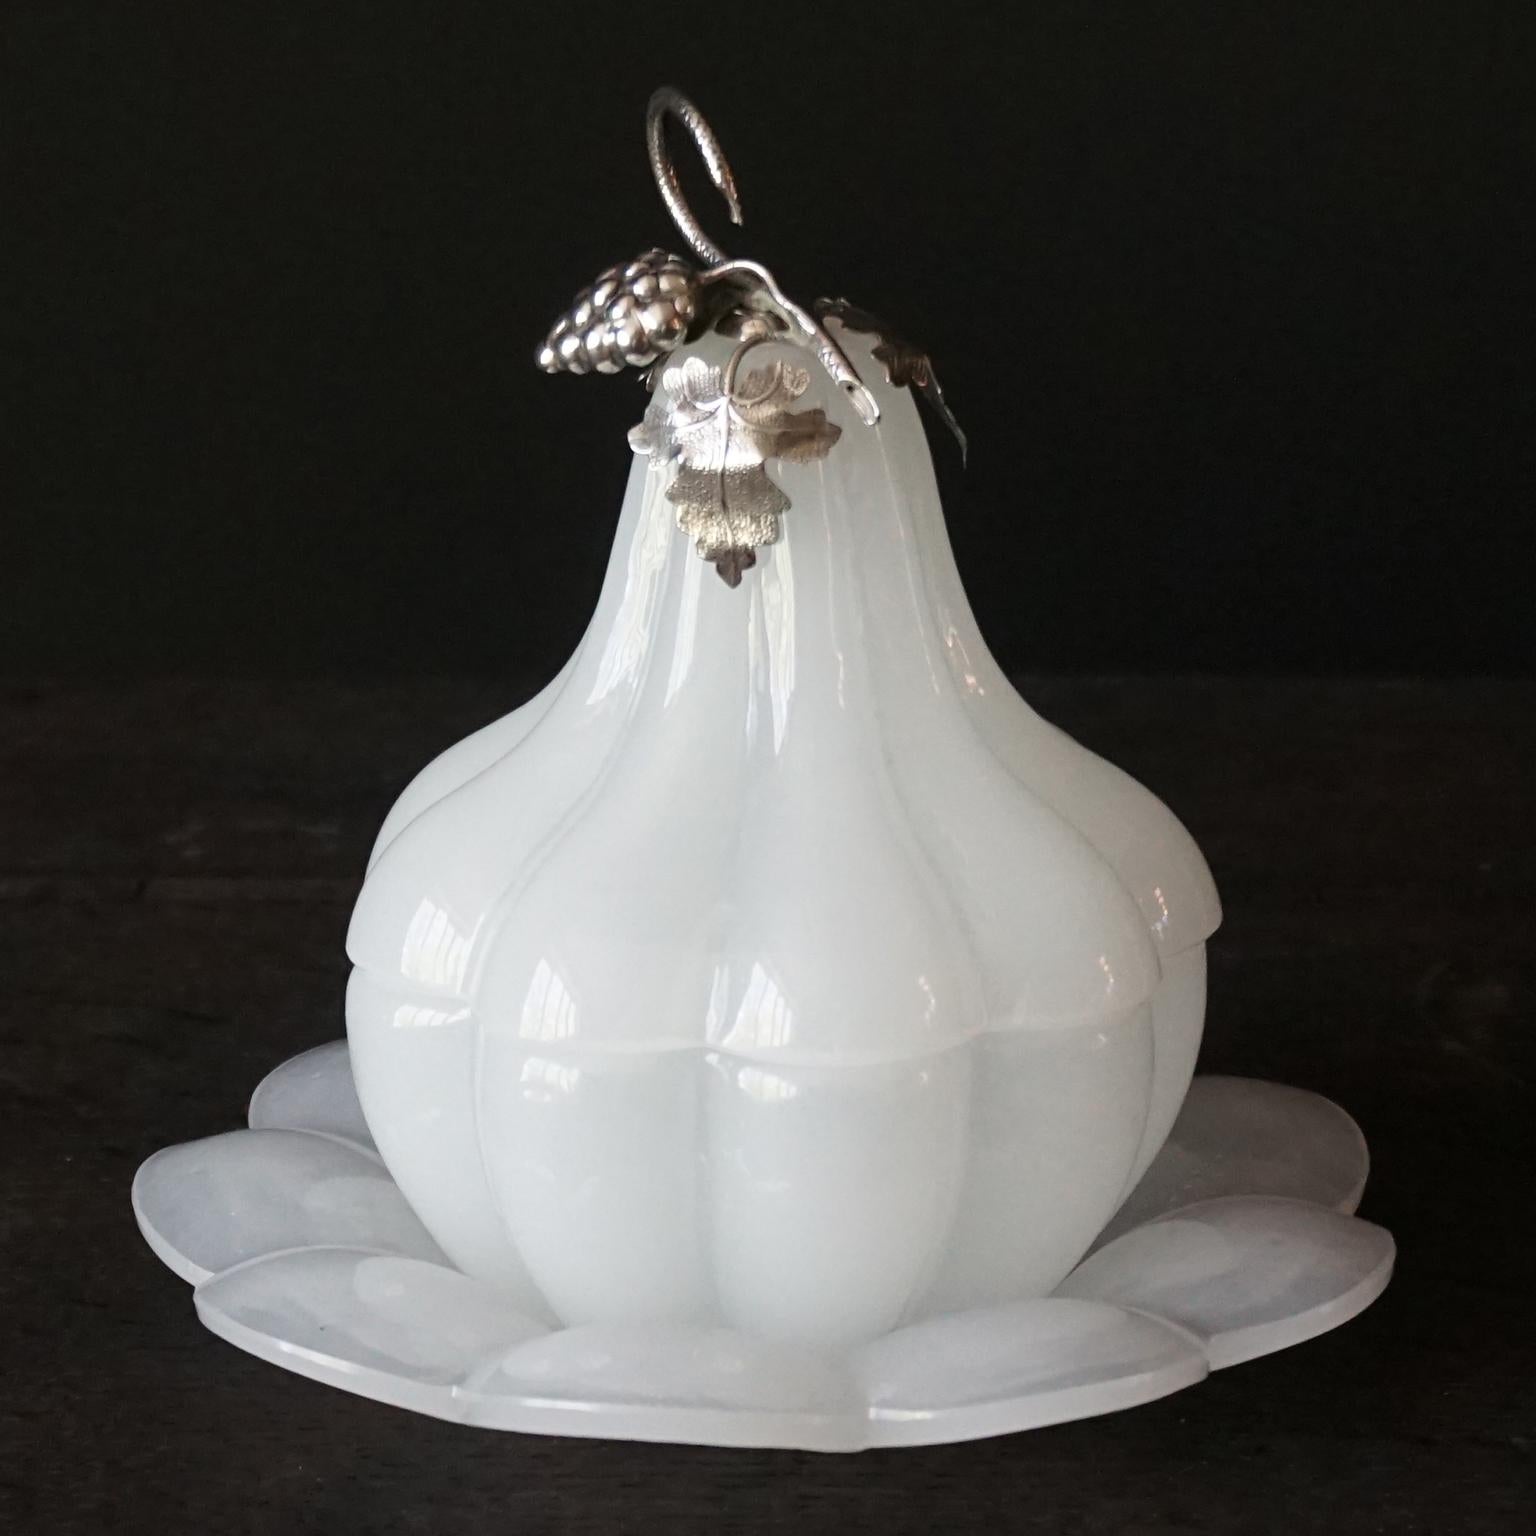 Très jolie petite jarre à couvercle en verre opalin blanc des années 1950 en forme de poire ou de gourde en trois pièces, une assiette festonnée dans laquelle le plat à fond festonné s'emboîte parfaitement et un couvercle festonné.
Le couvercle est